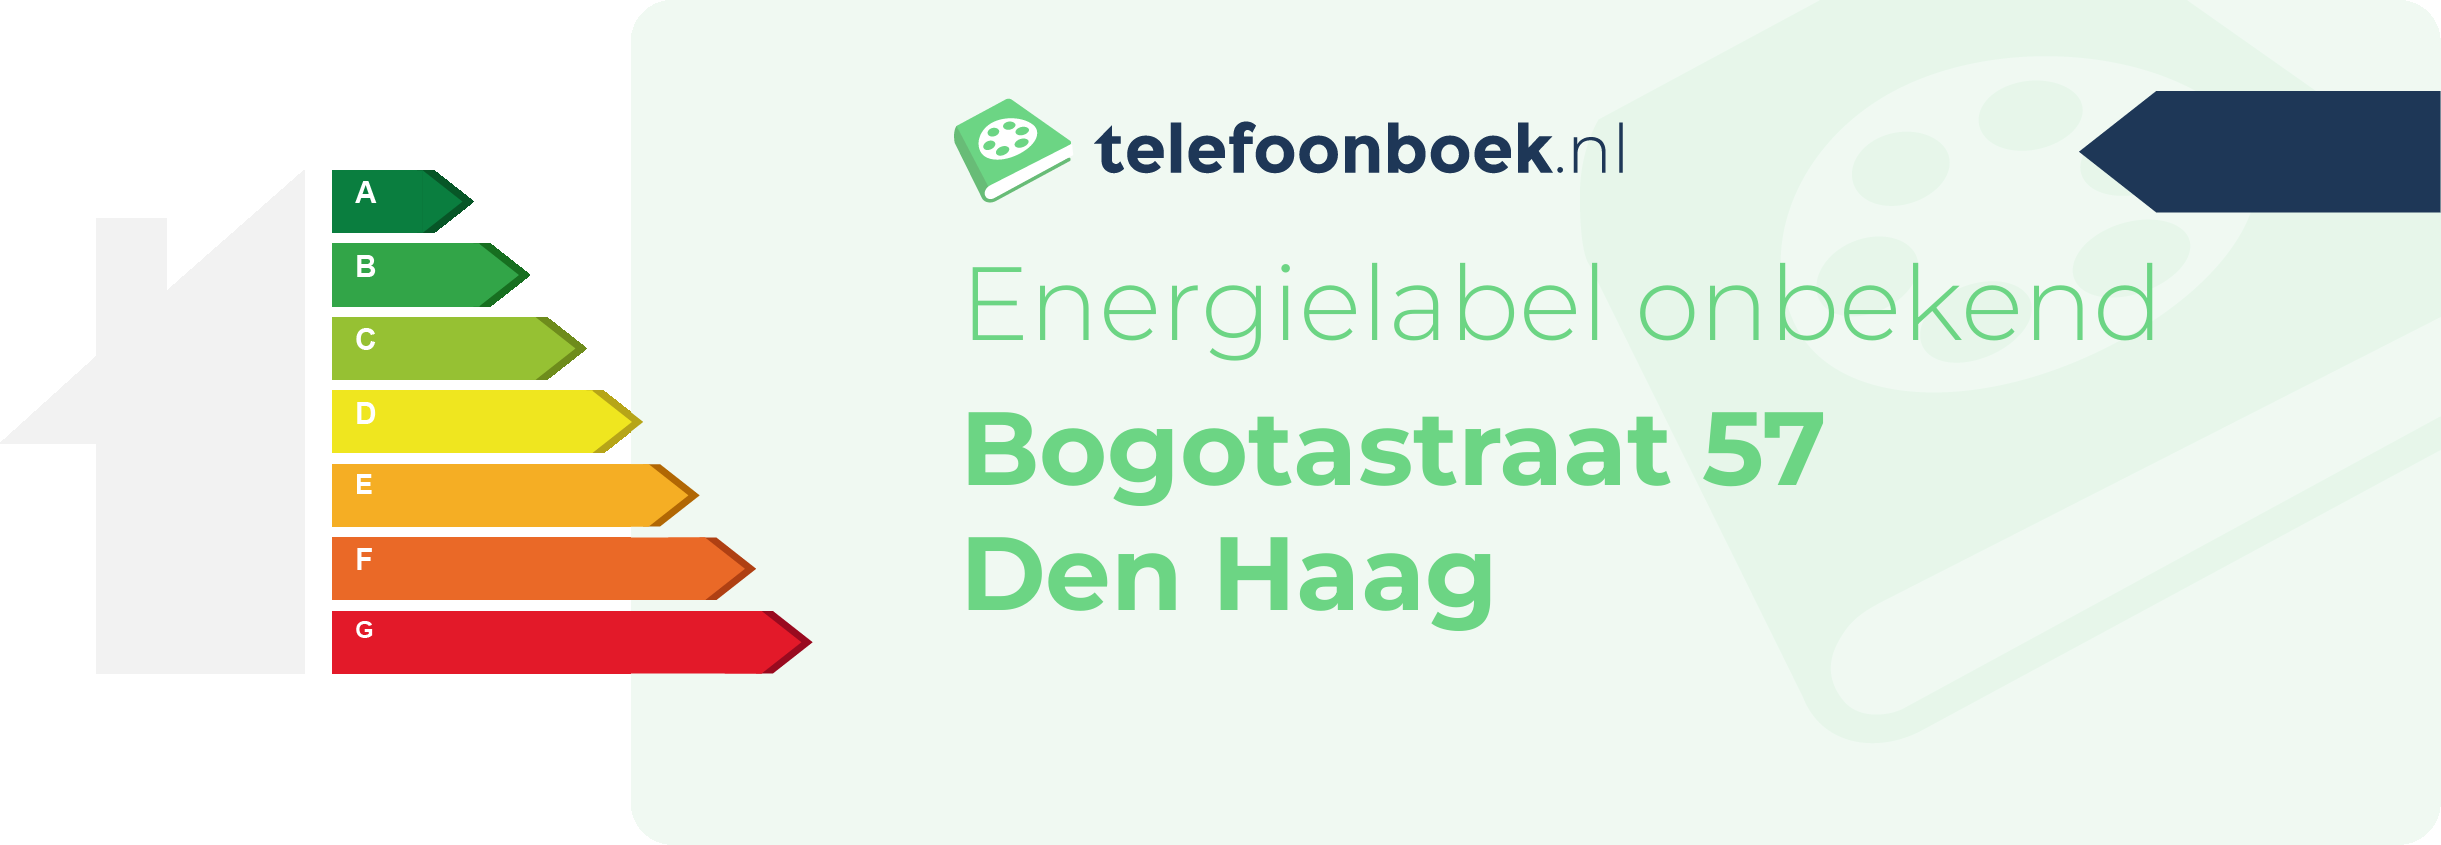 Energielabel Bogotastraat 57 Den Haag